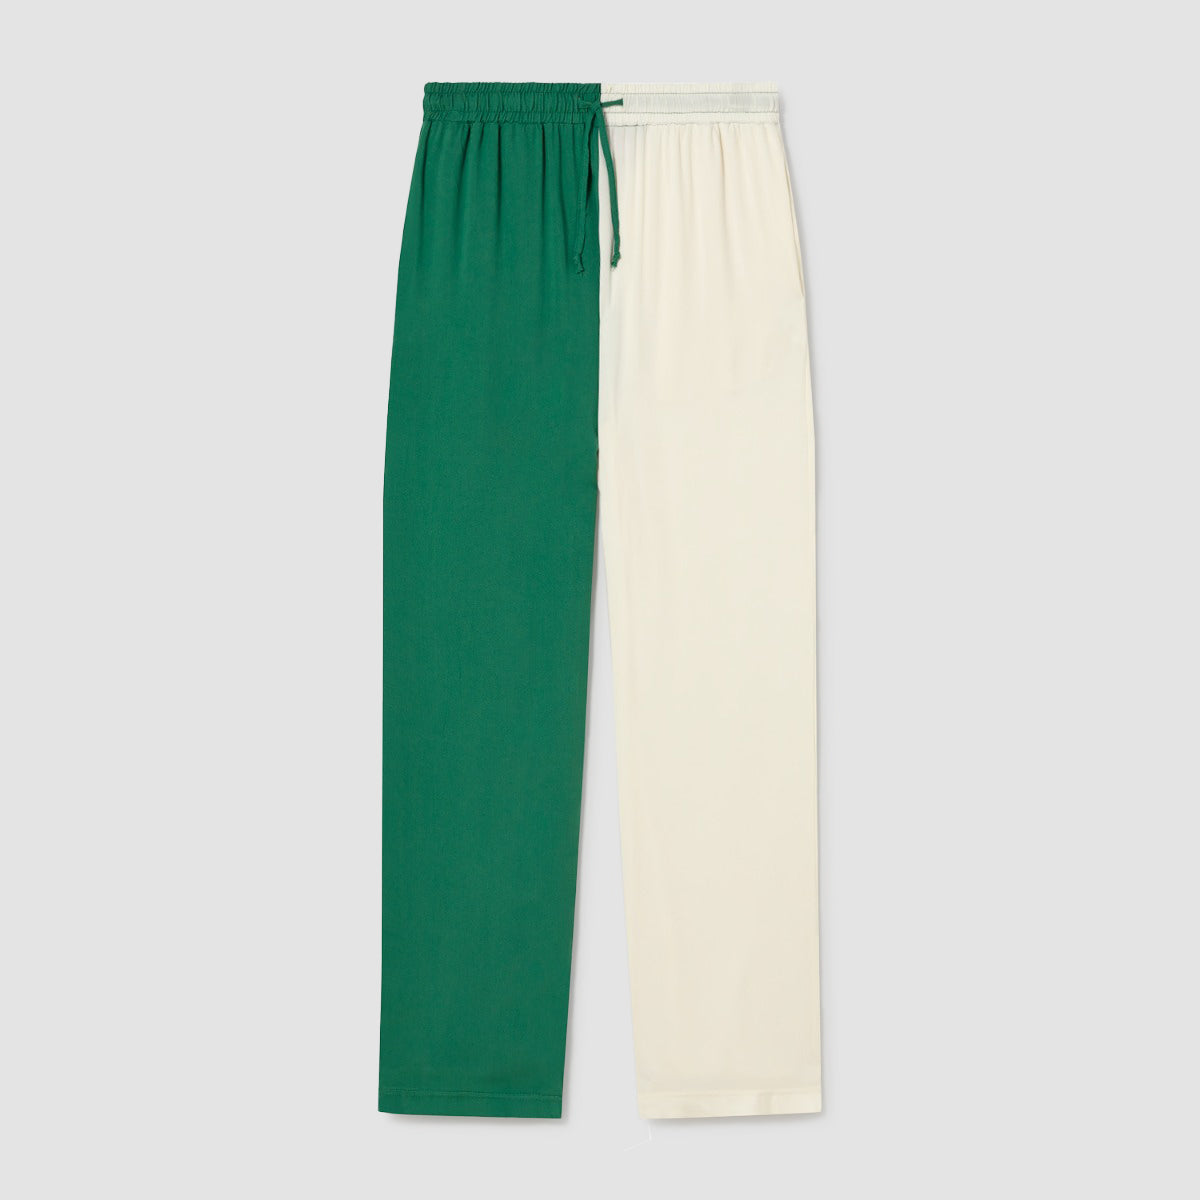 Pantalón Verde y Blanco 1973